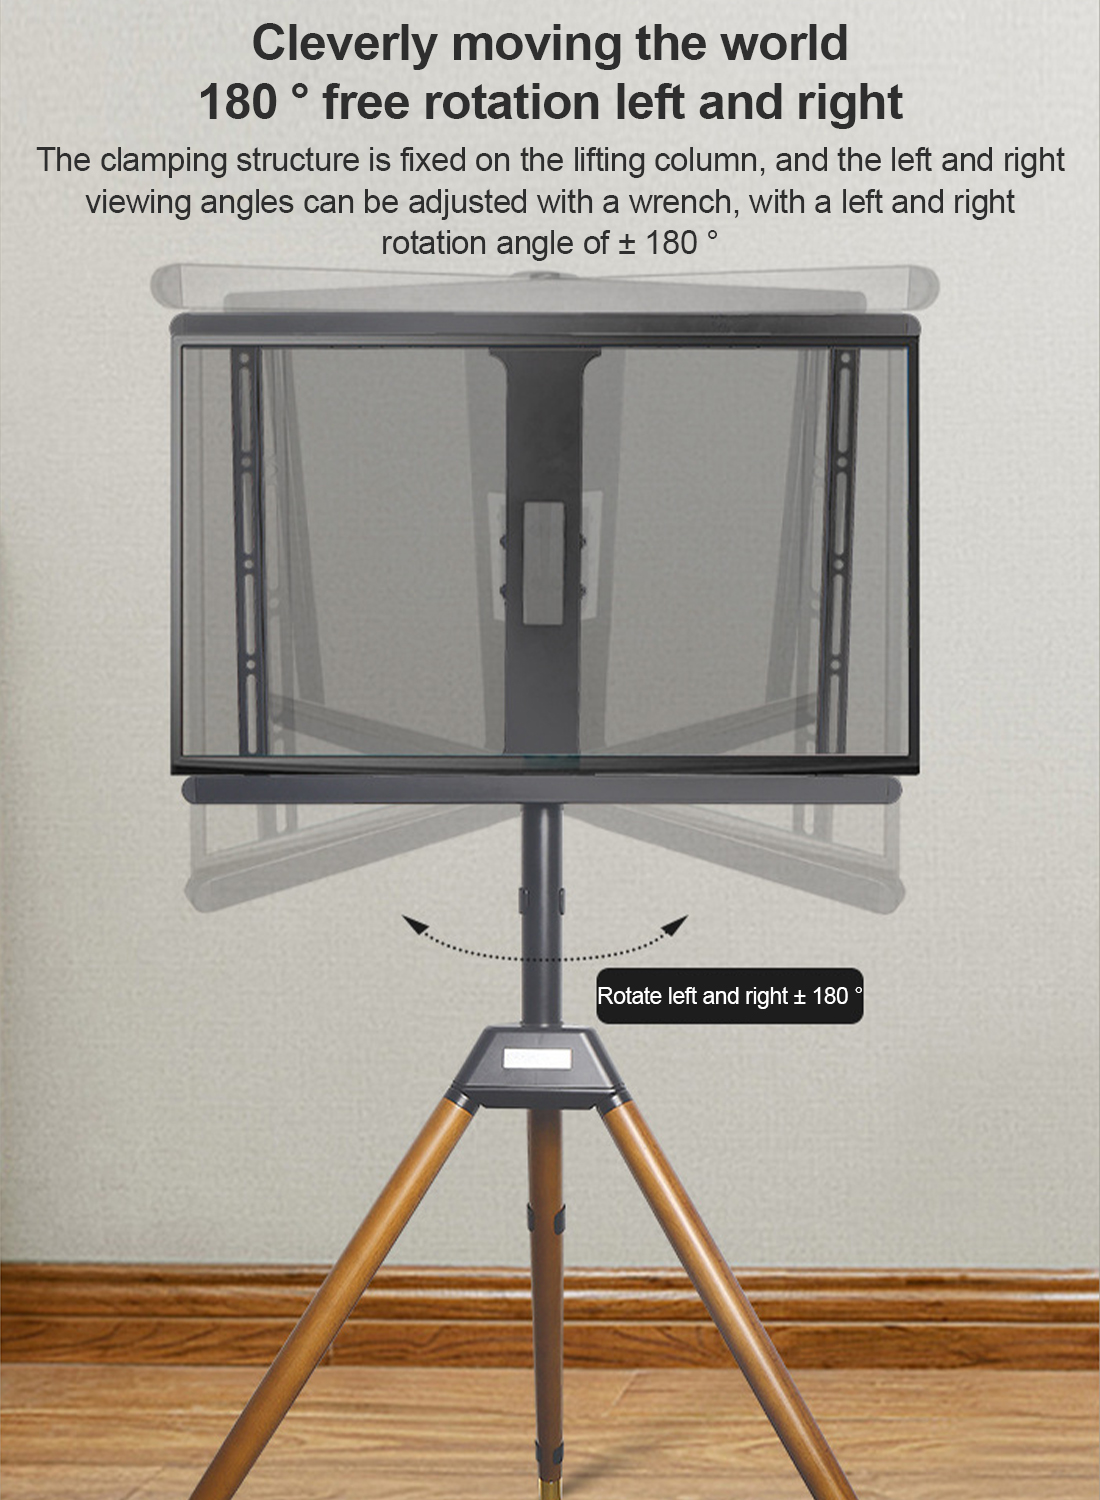 خشبية حامل التلفزيون ، مع قاعدة ترايبود ، 32-75 بوصة الشاشة ، قابل للتعديل ارتفاع التلفزيون الكلمة قوس 180 درجة الروتاري التلفزيون المحمولة قوس ، تنطبق على غرف النوم وغرف المعيشة والاستوديوهات